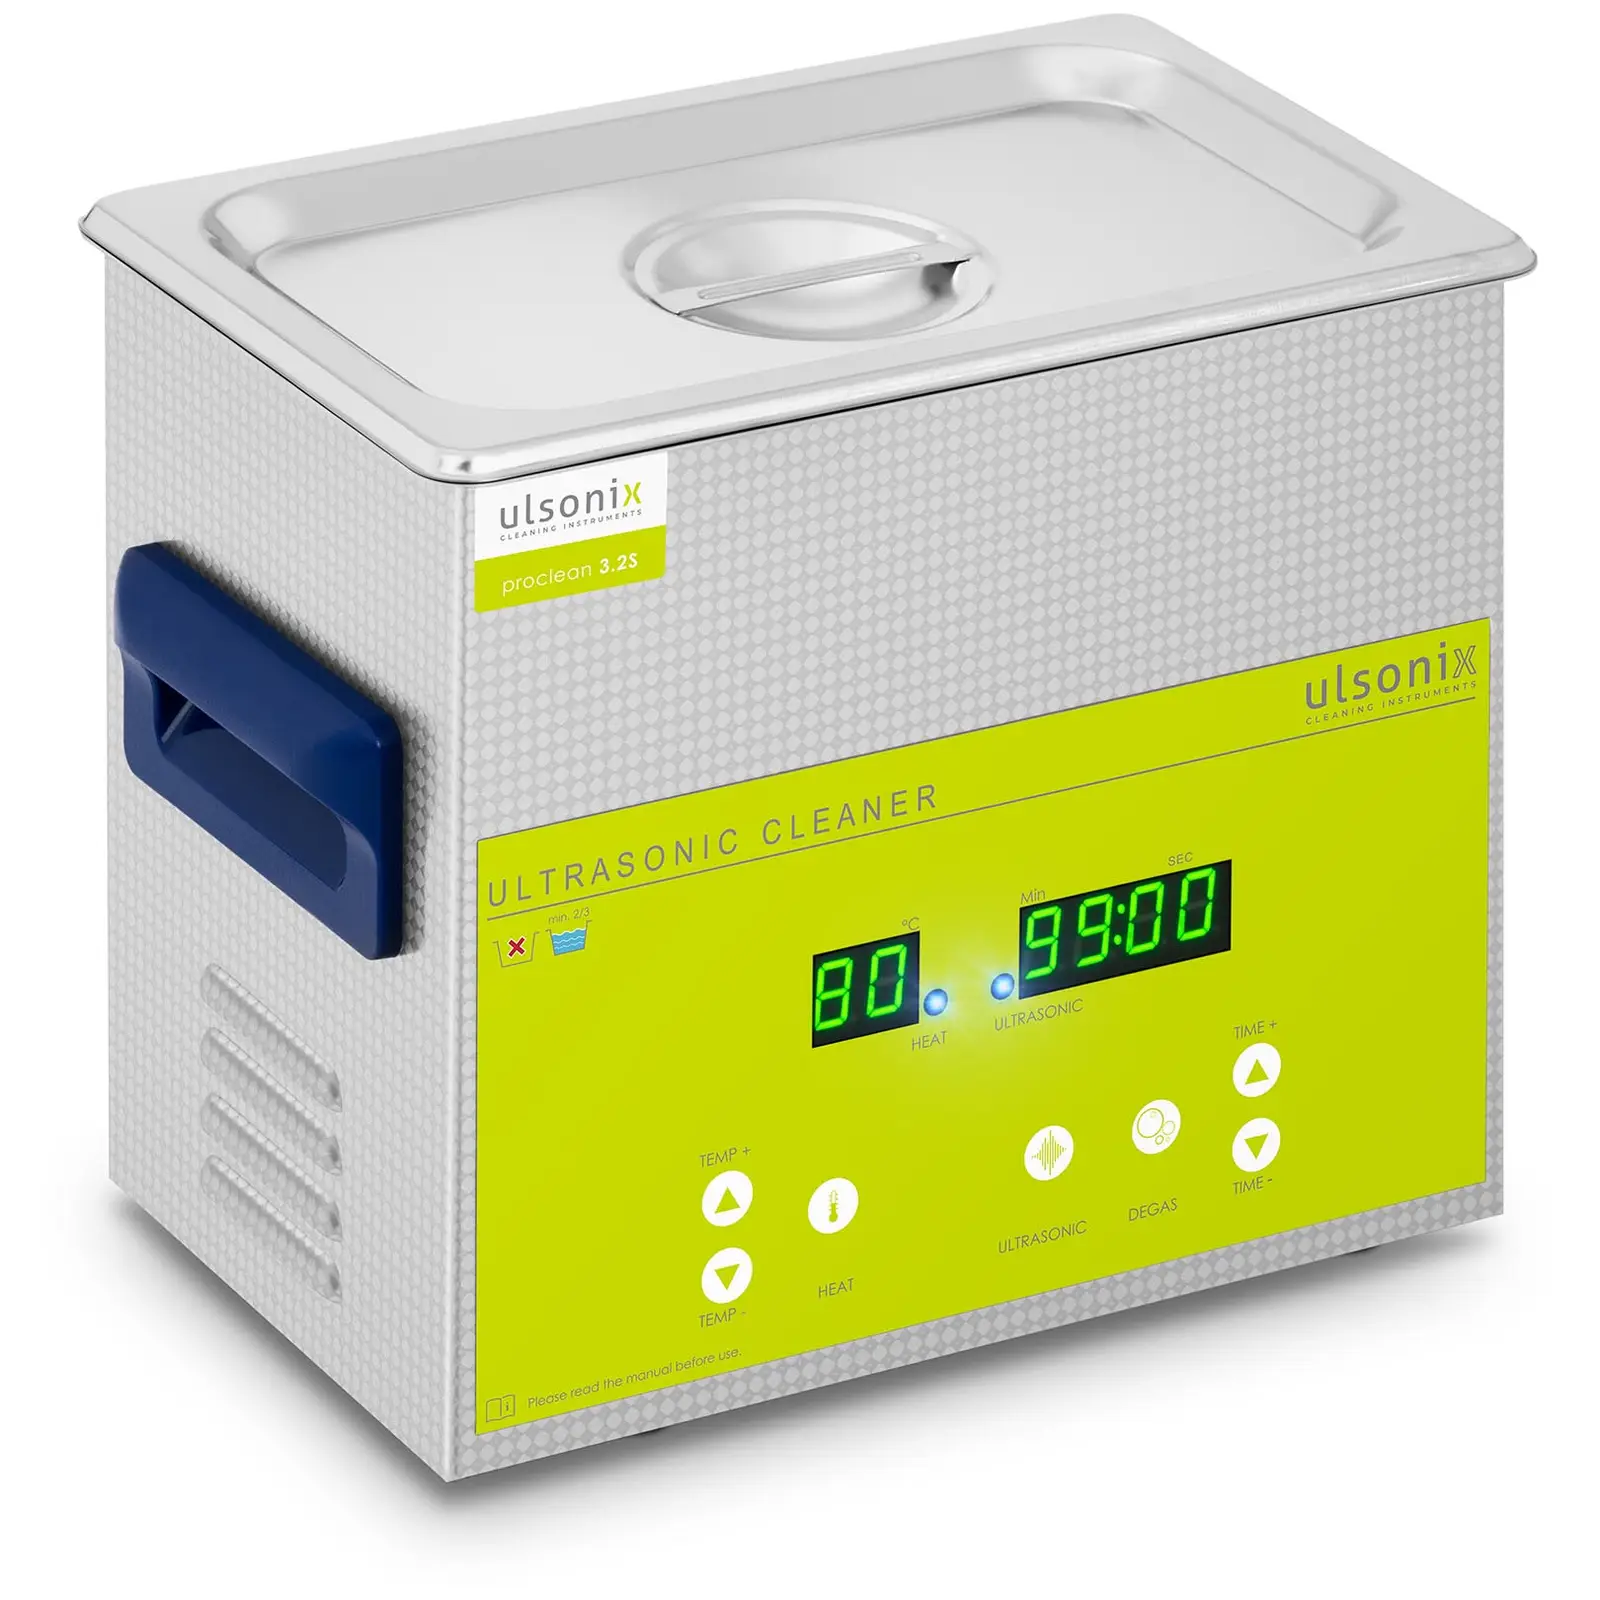 Ultrasonic Cleaner - degas - 3.2 L